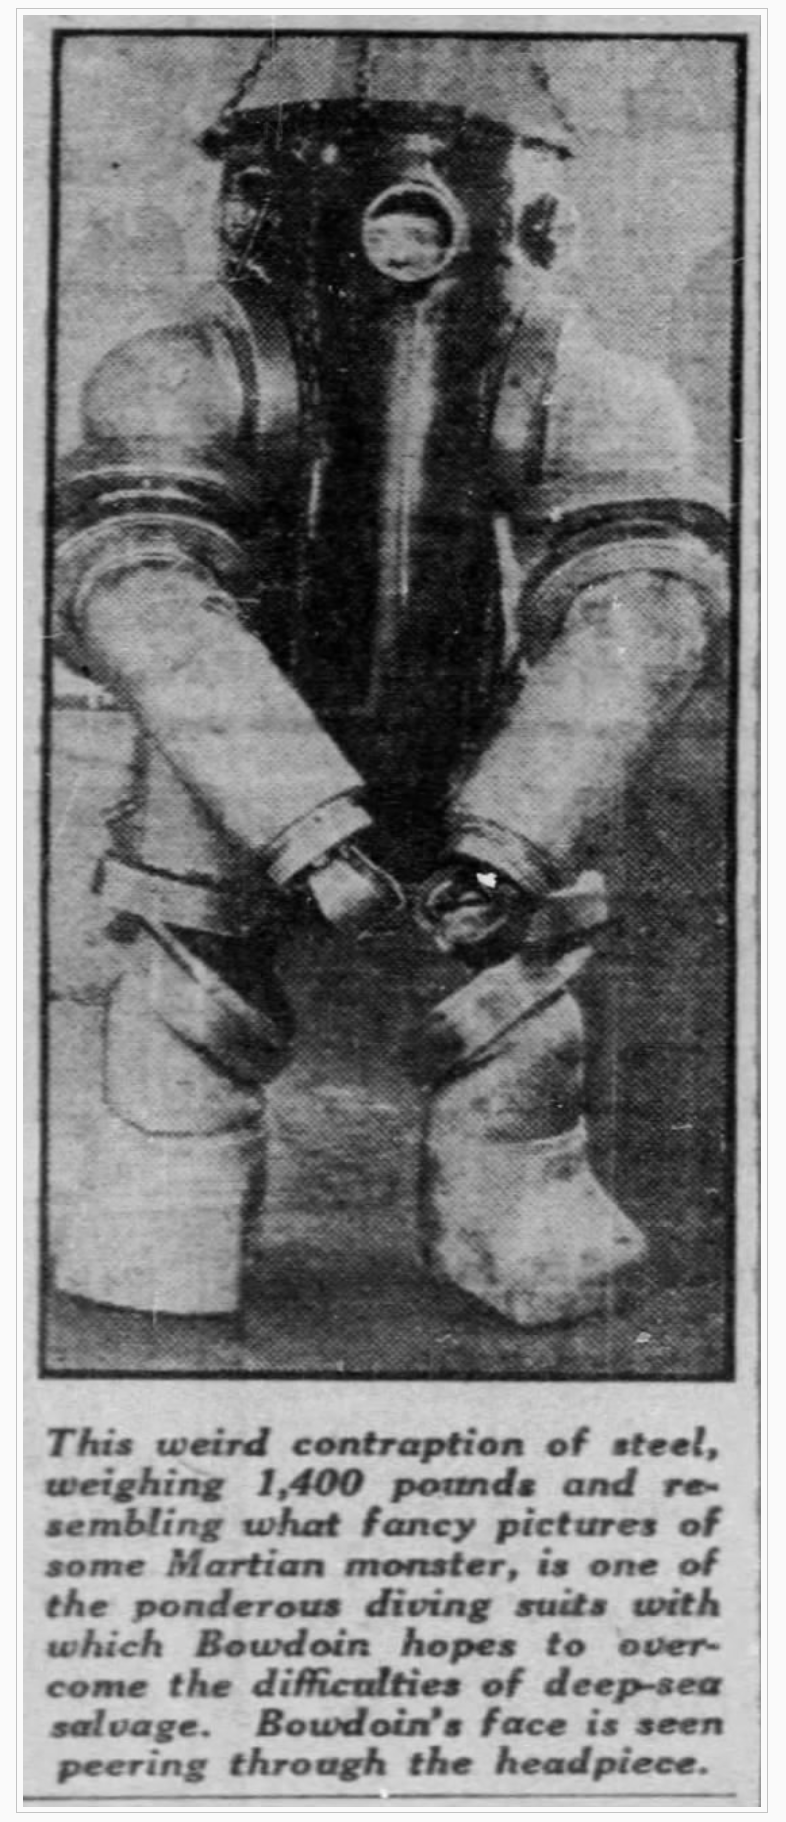 Diving suit, 1925